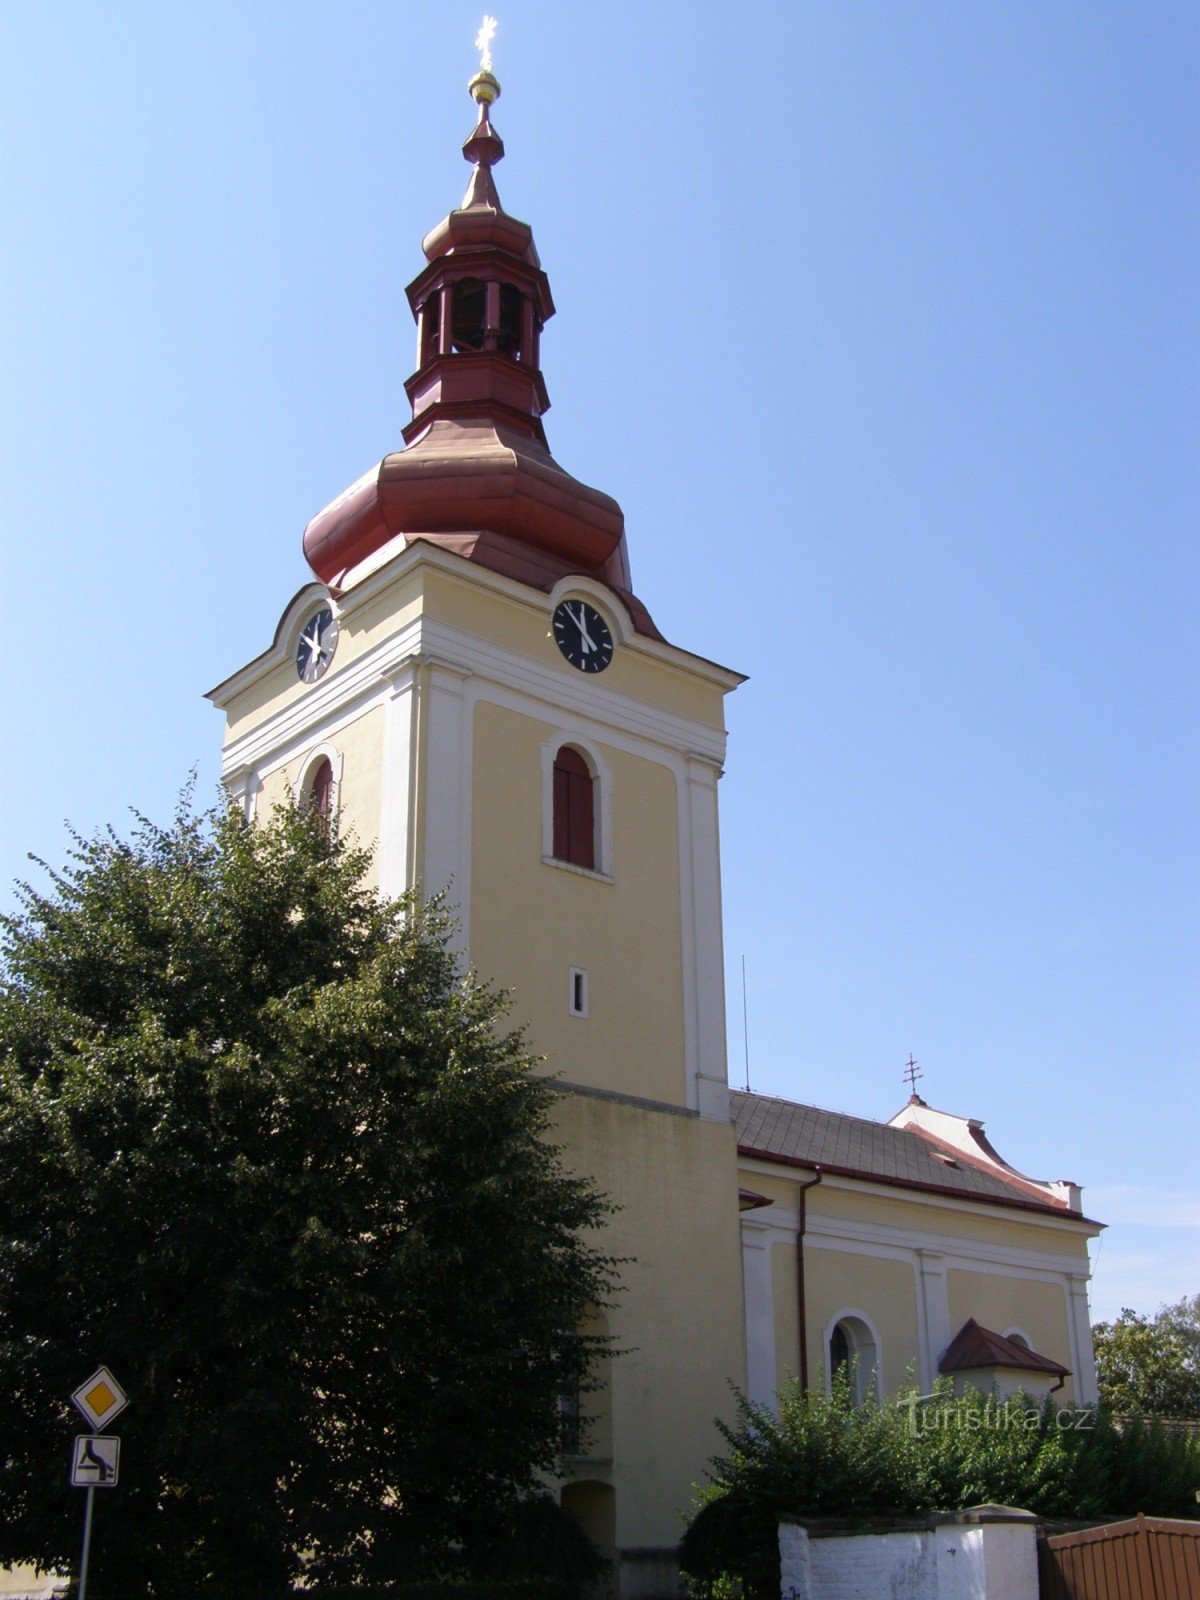 Milovice - iglesia